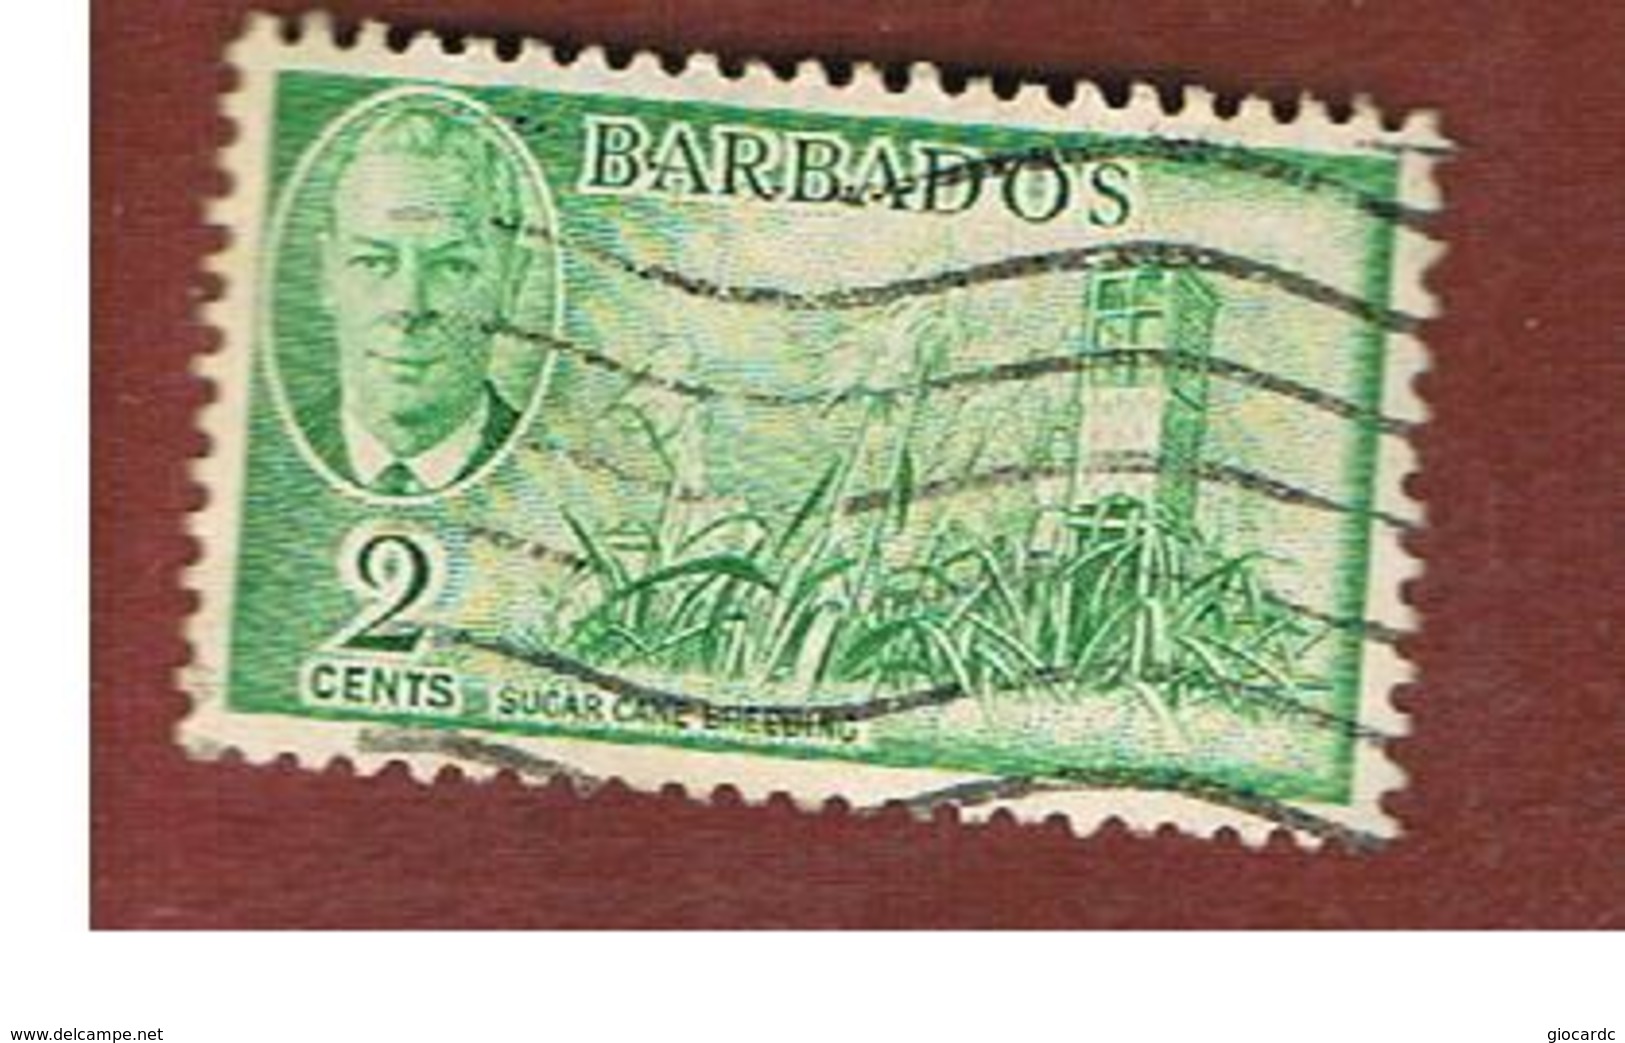 BARBADOS - MI  185  -   1950   SUGAR CANE  -  USED° - Barbados (...-1966)